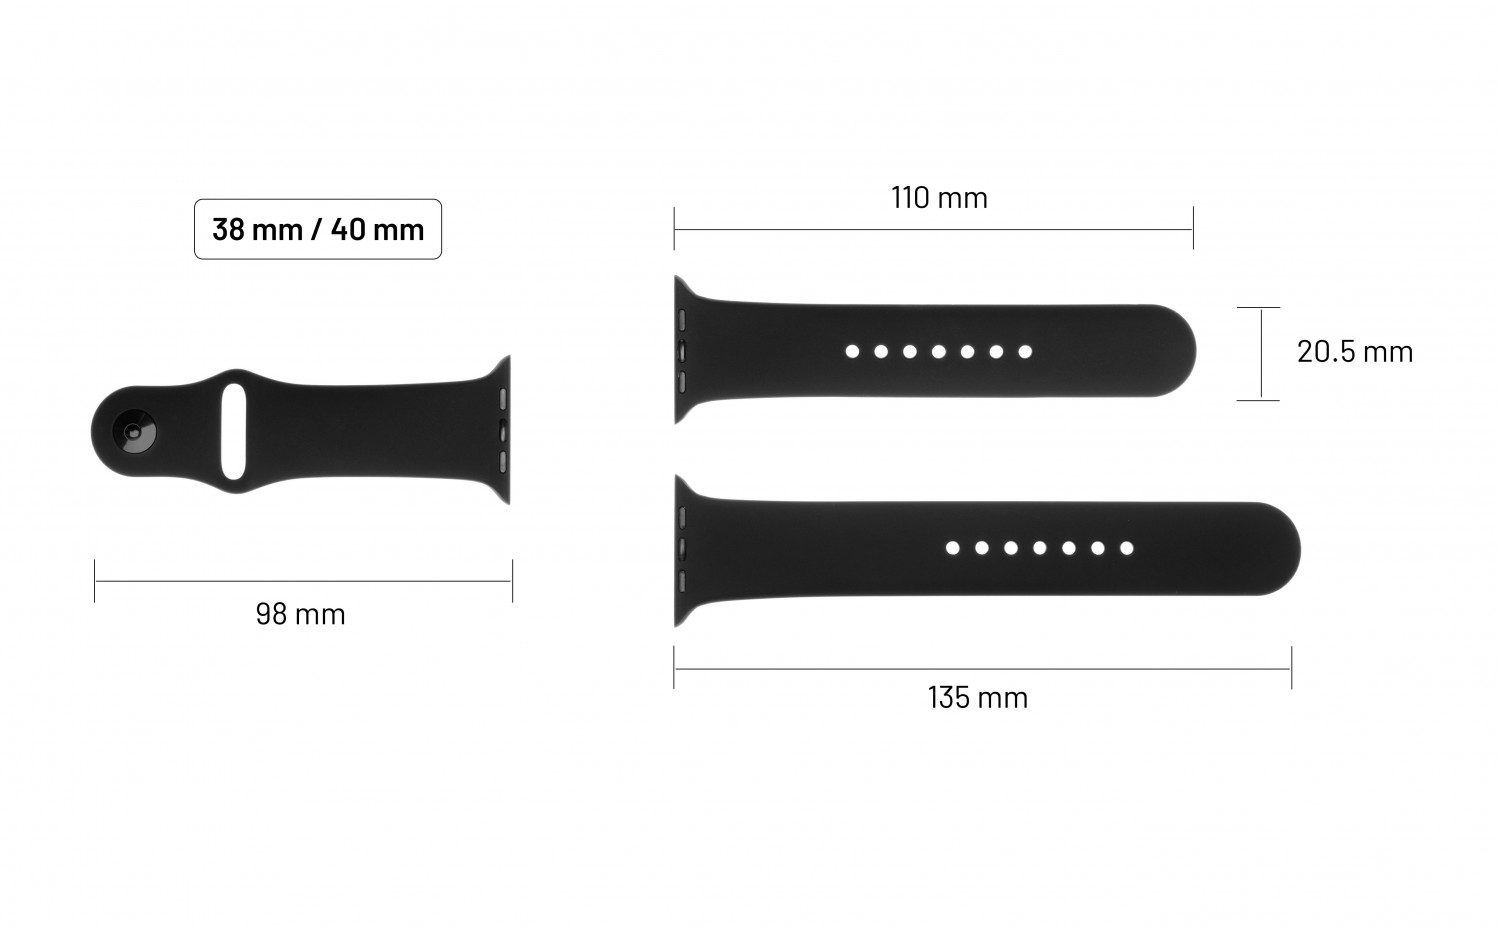 Set silikonových řemínků FIXED Silicone Strap pro Apple Watch 38 mm/40 mm, černá